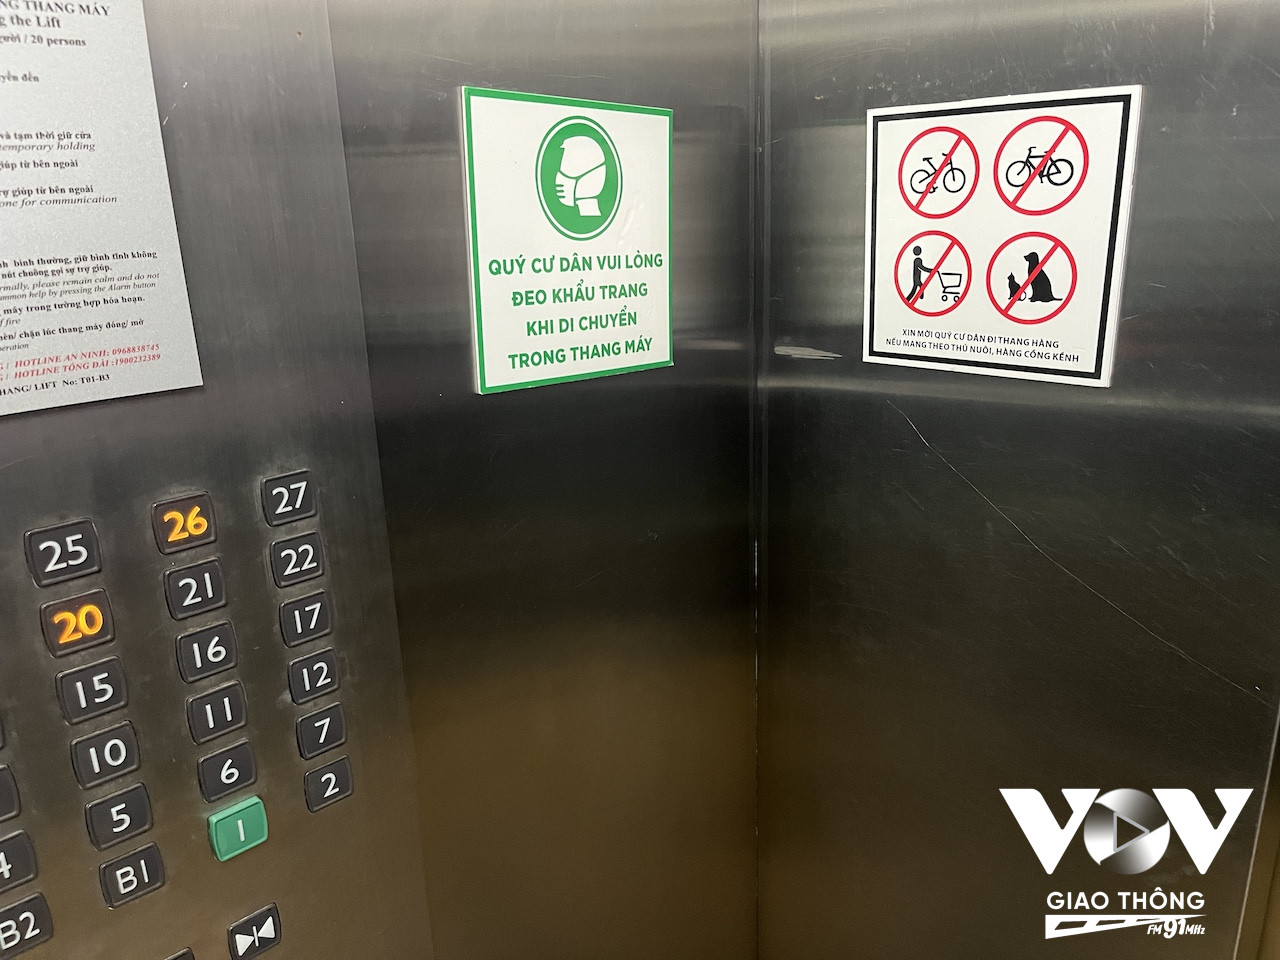 Ở nhiều nơi không gian hẹp, như thang máy, vẫn còn giữ những tấm bảng nhắc nhở mọi người đeo khẩu trang phòng dịch bệnh